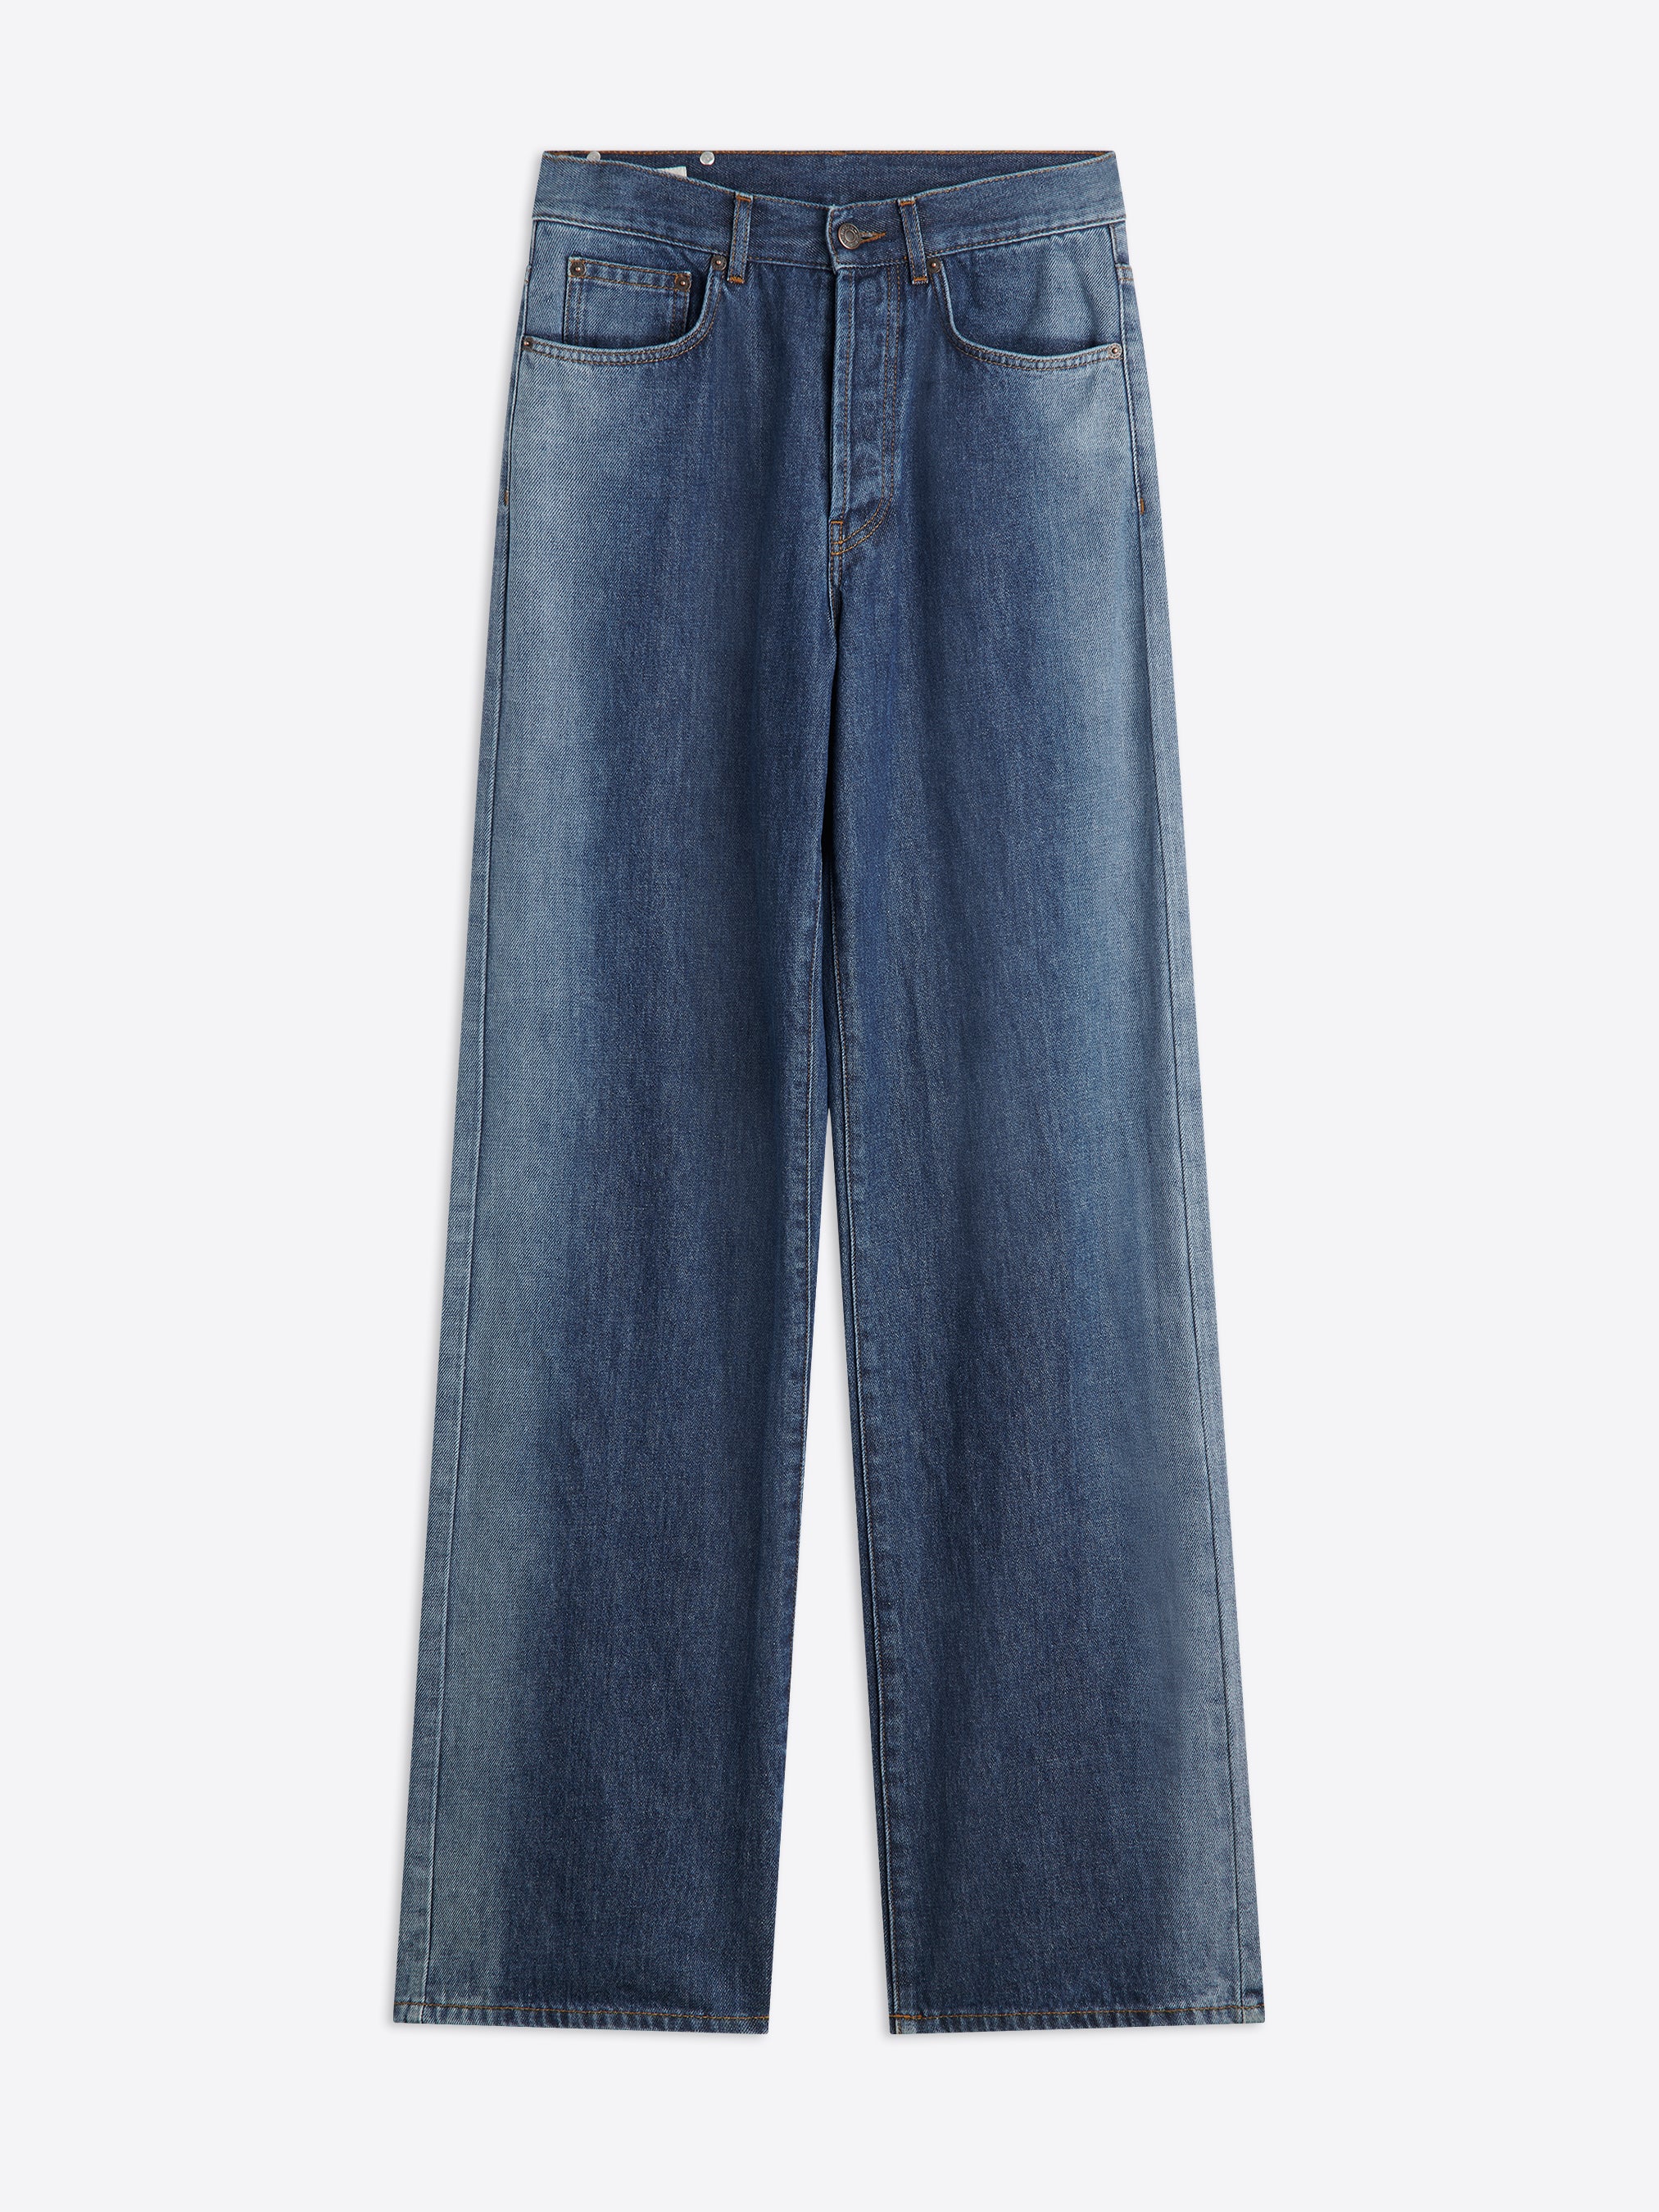 Dries Van Noten Indigo Button-Fly Jeans